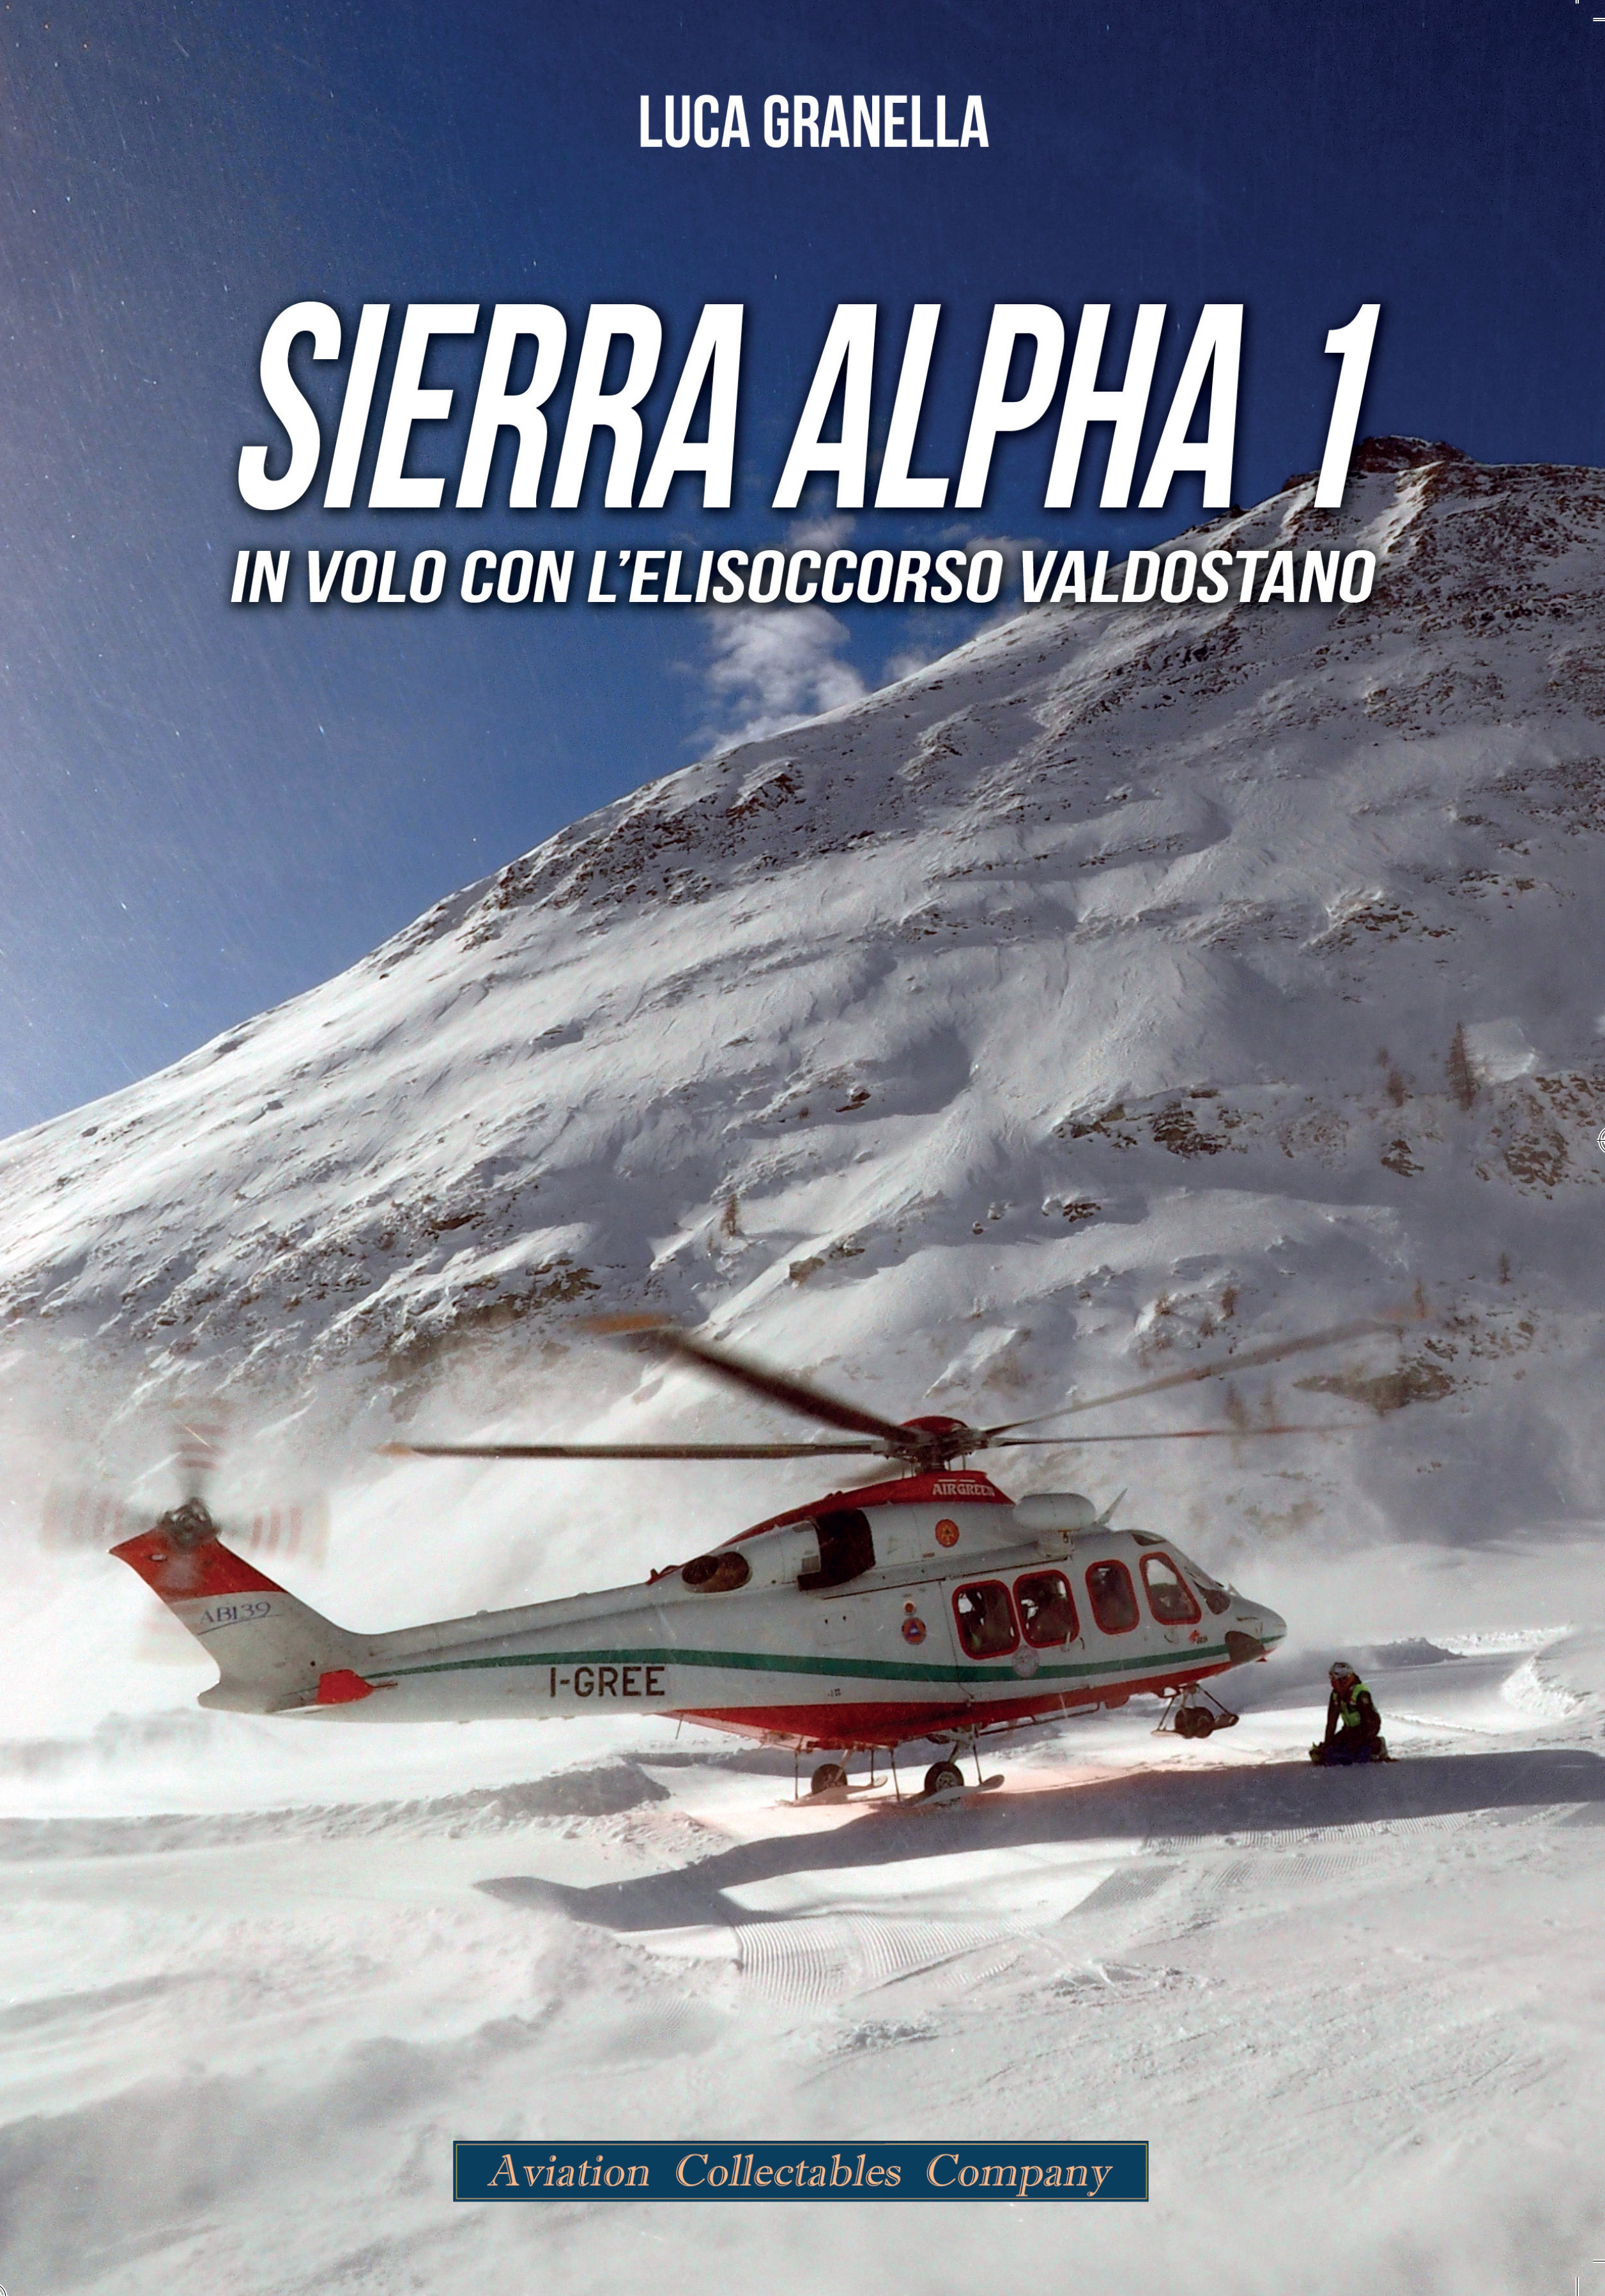 Sierra Alpha 1 – In volo con l’elisoccorso valdostano, il nuovo libro di Aviation Collectables Company